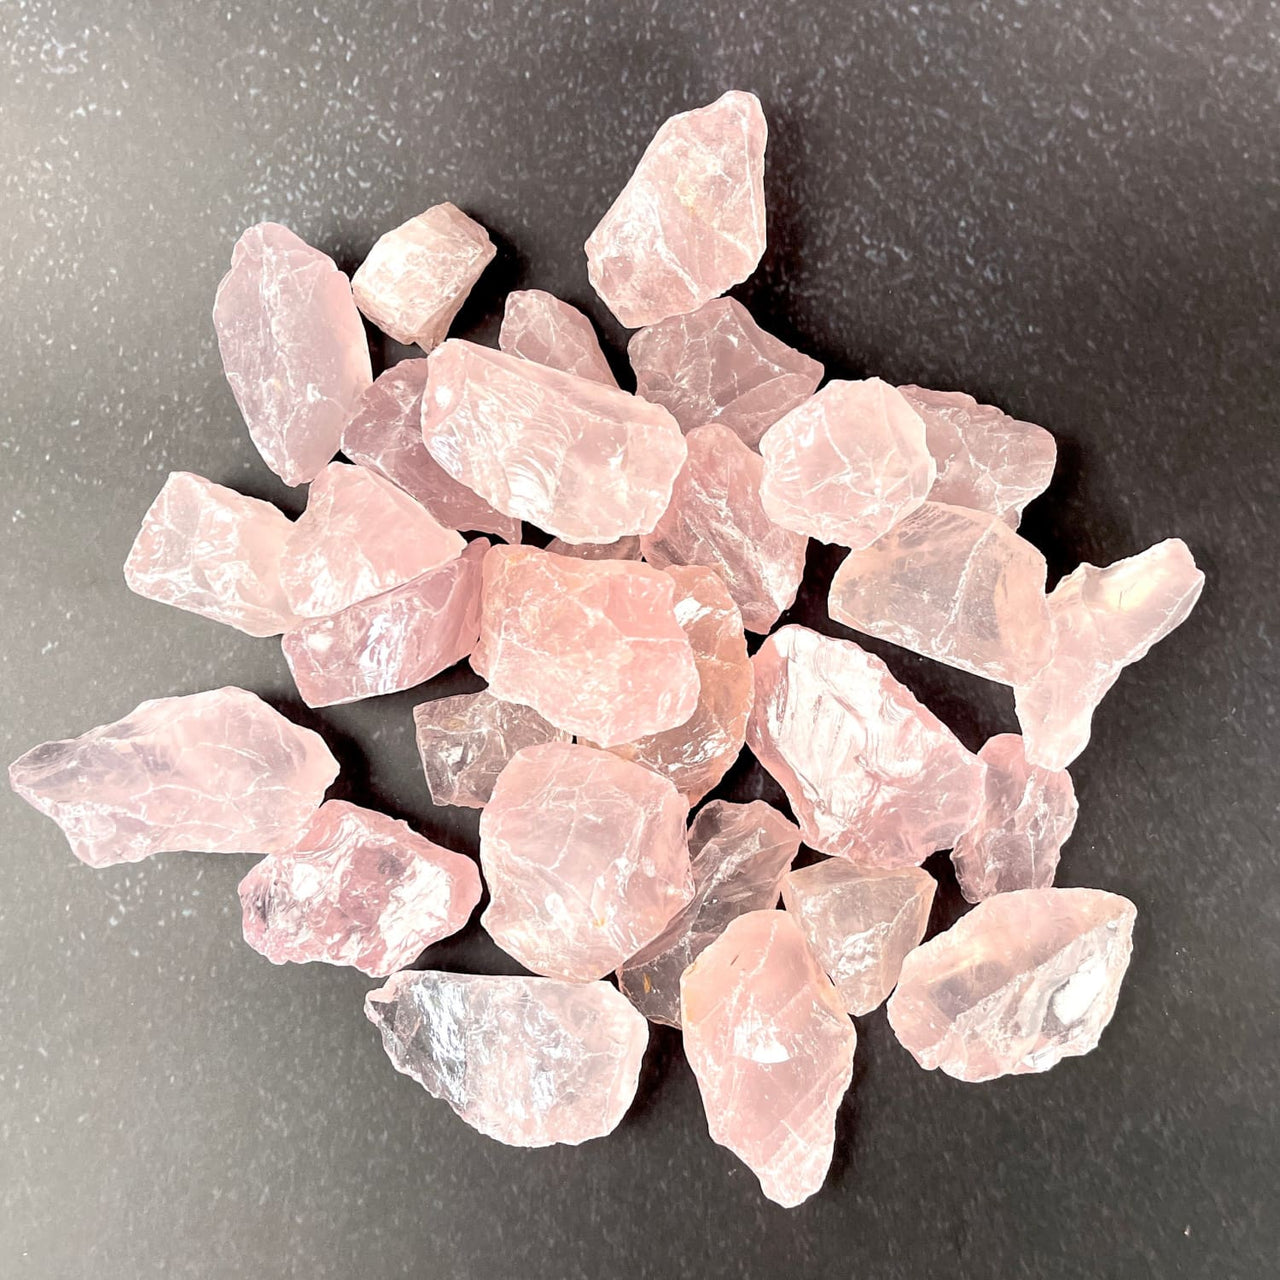 Rose QUARTZ Rough Crystal Select Size #RQ06D - $4.95